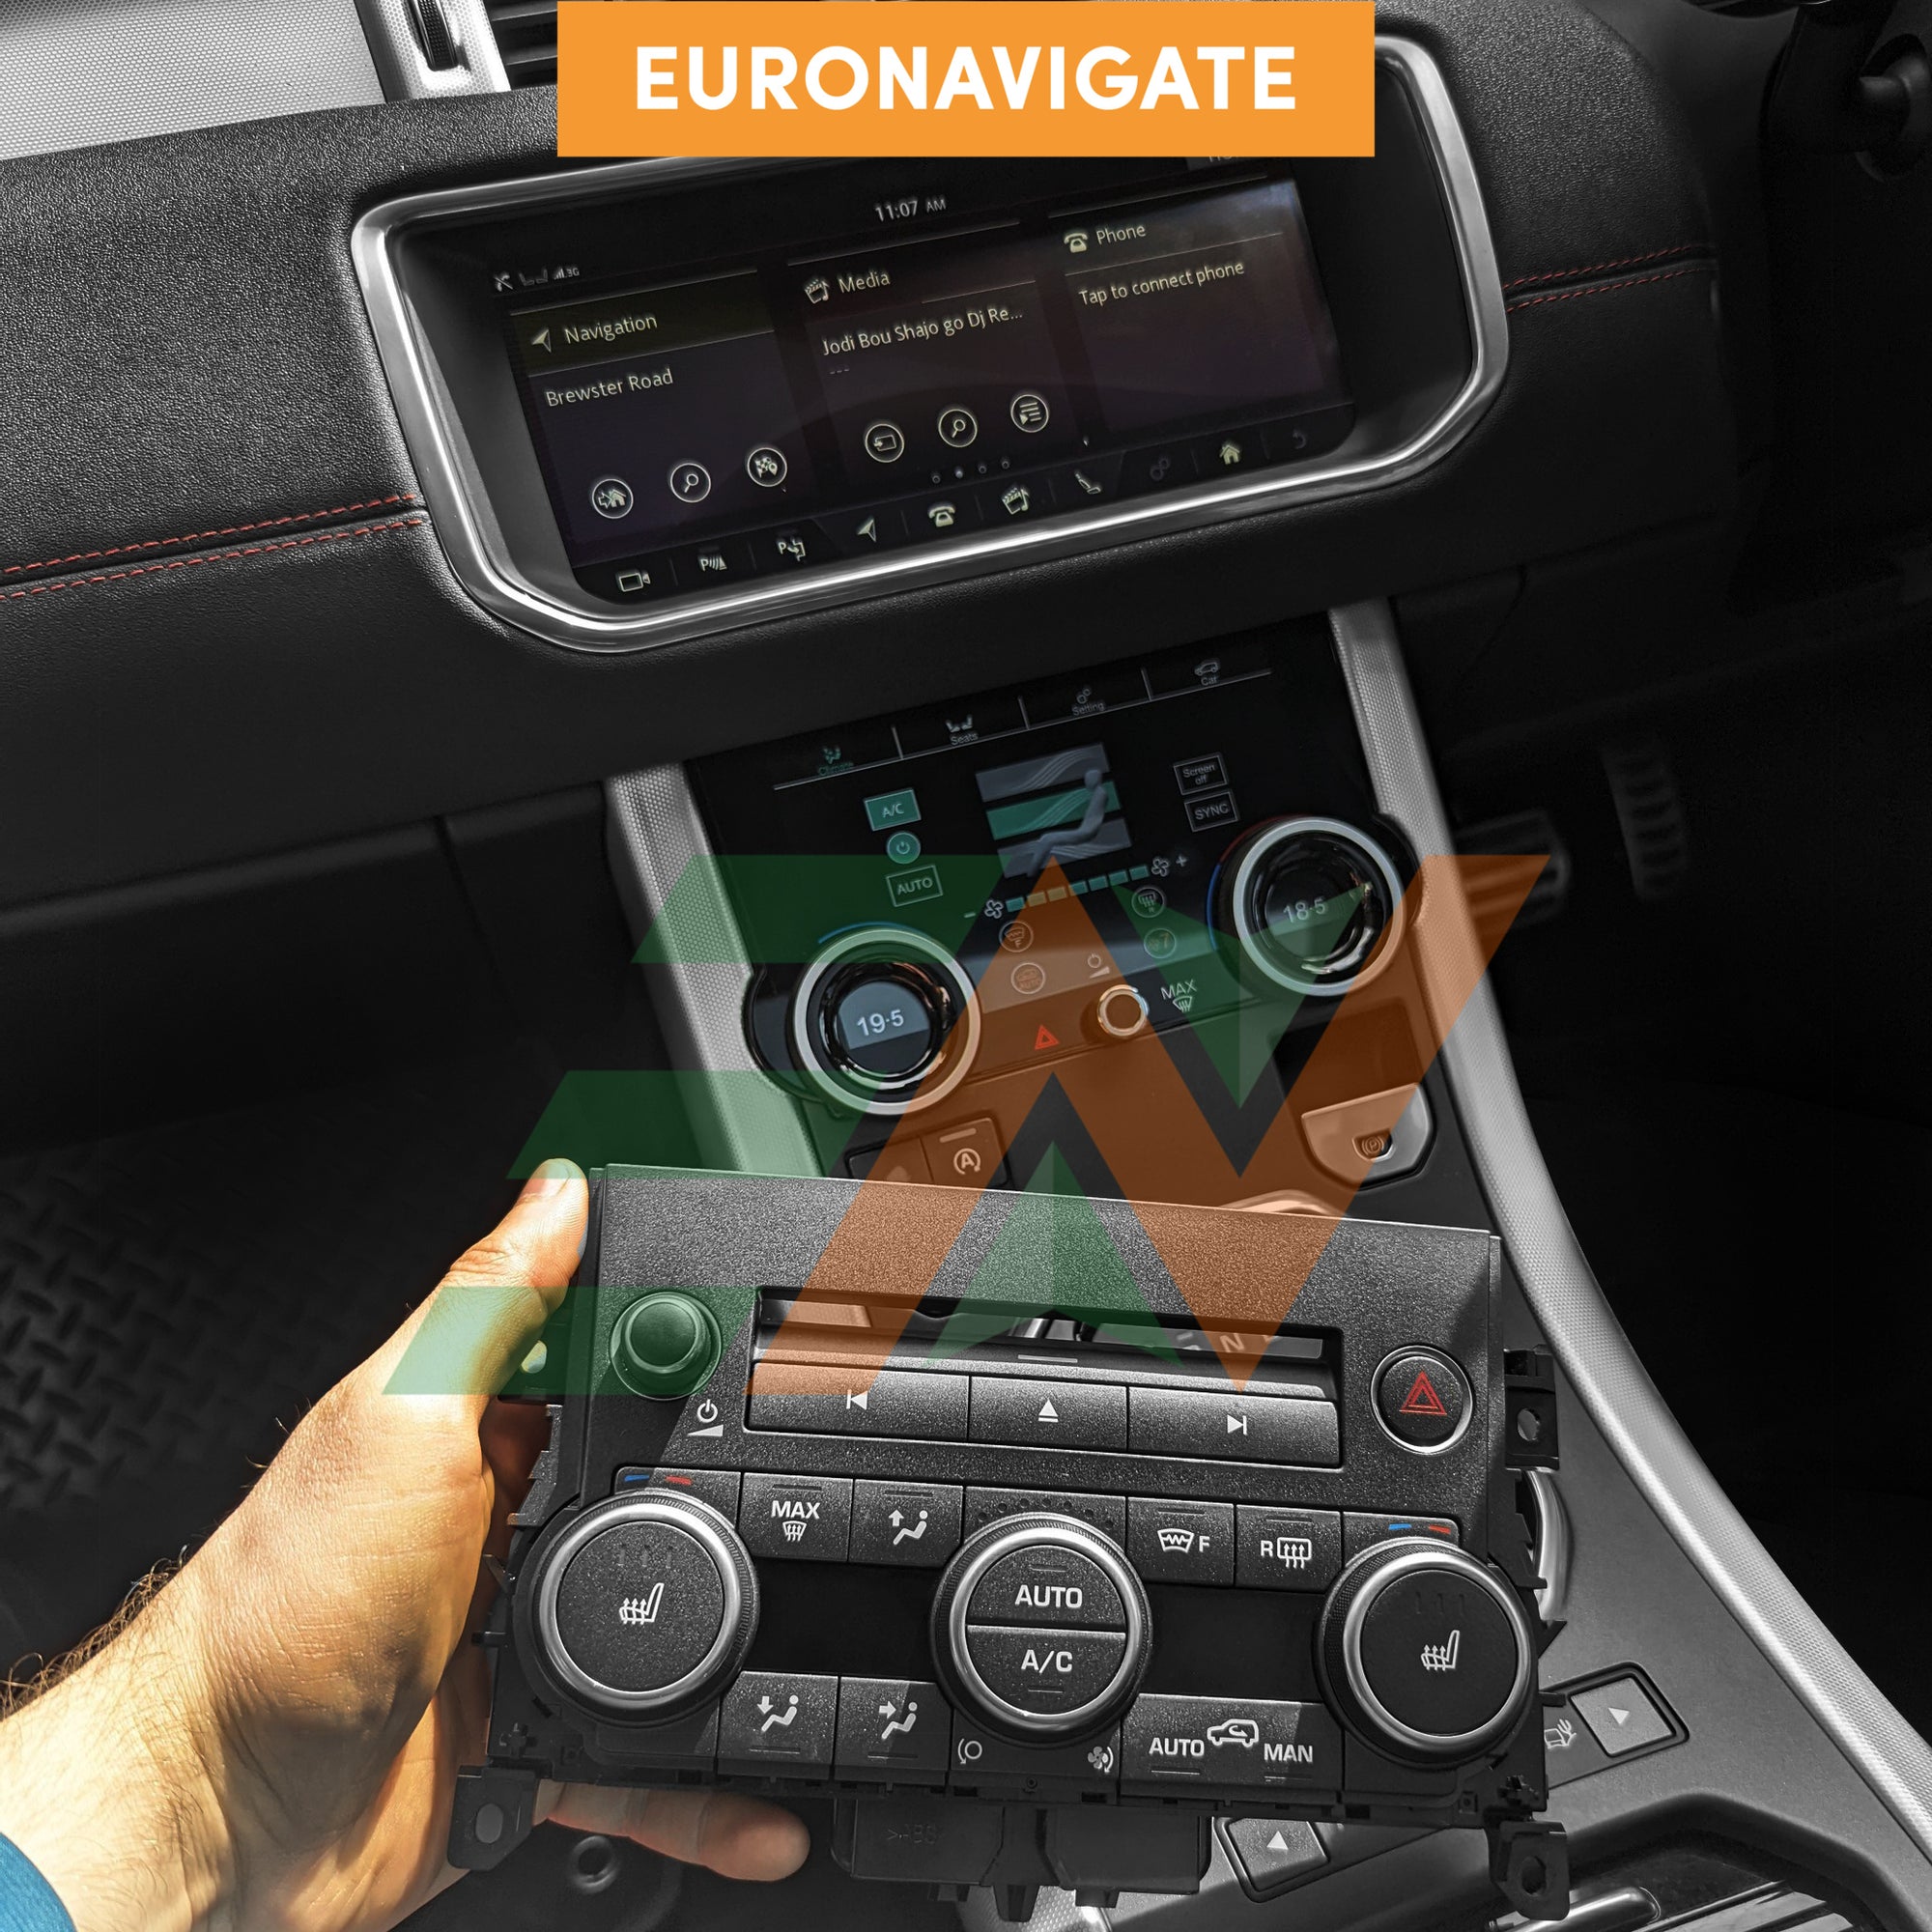 Euronavigate